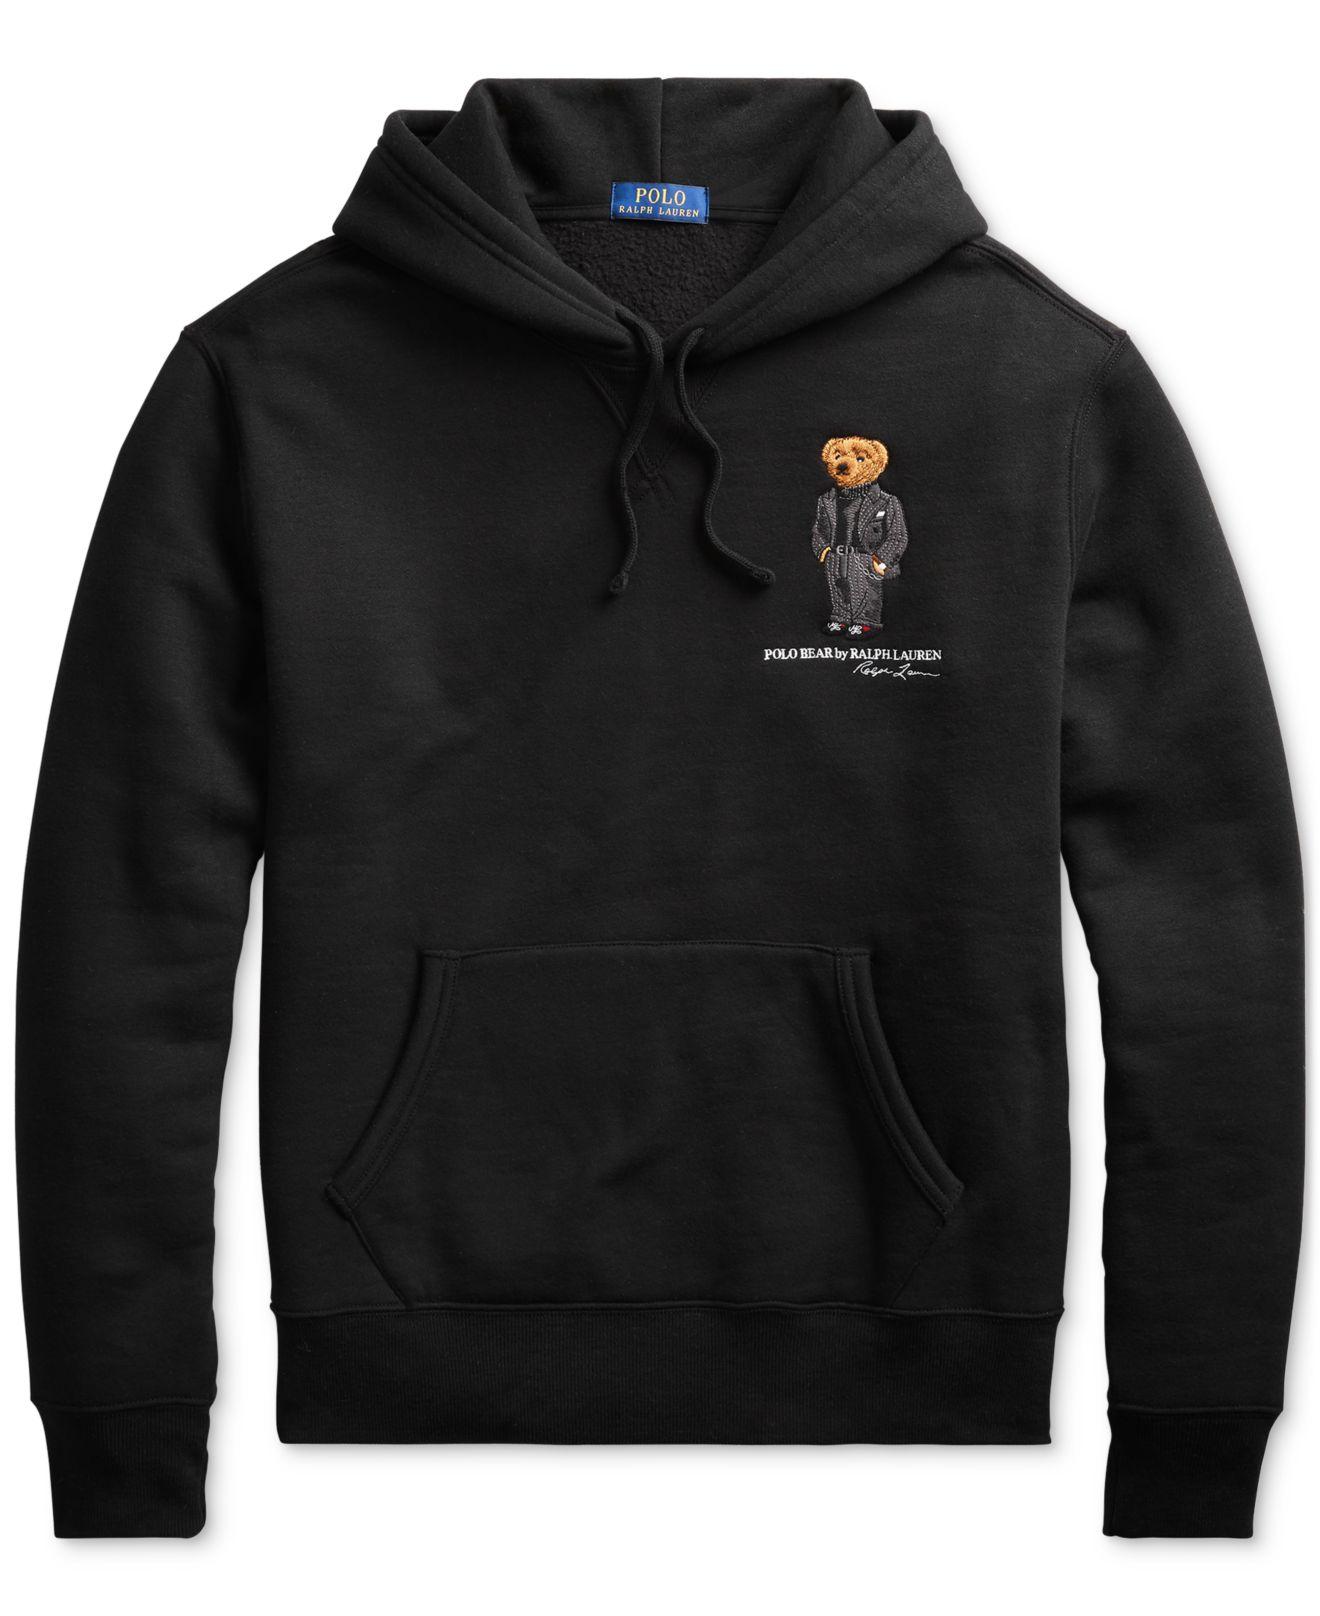 Polo Ralph Lauren Polo Bear Magic Fleece Knit Sweatshirt in Black 